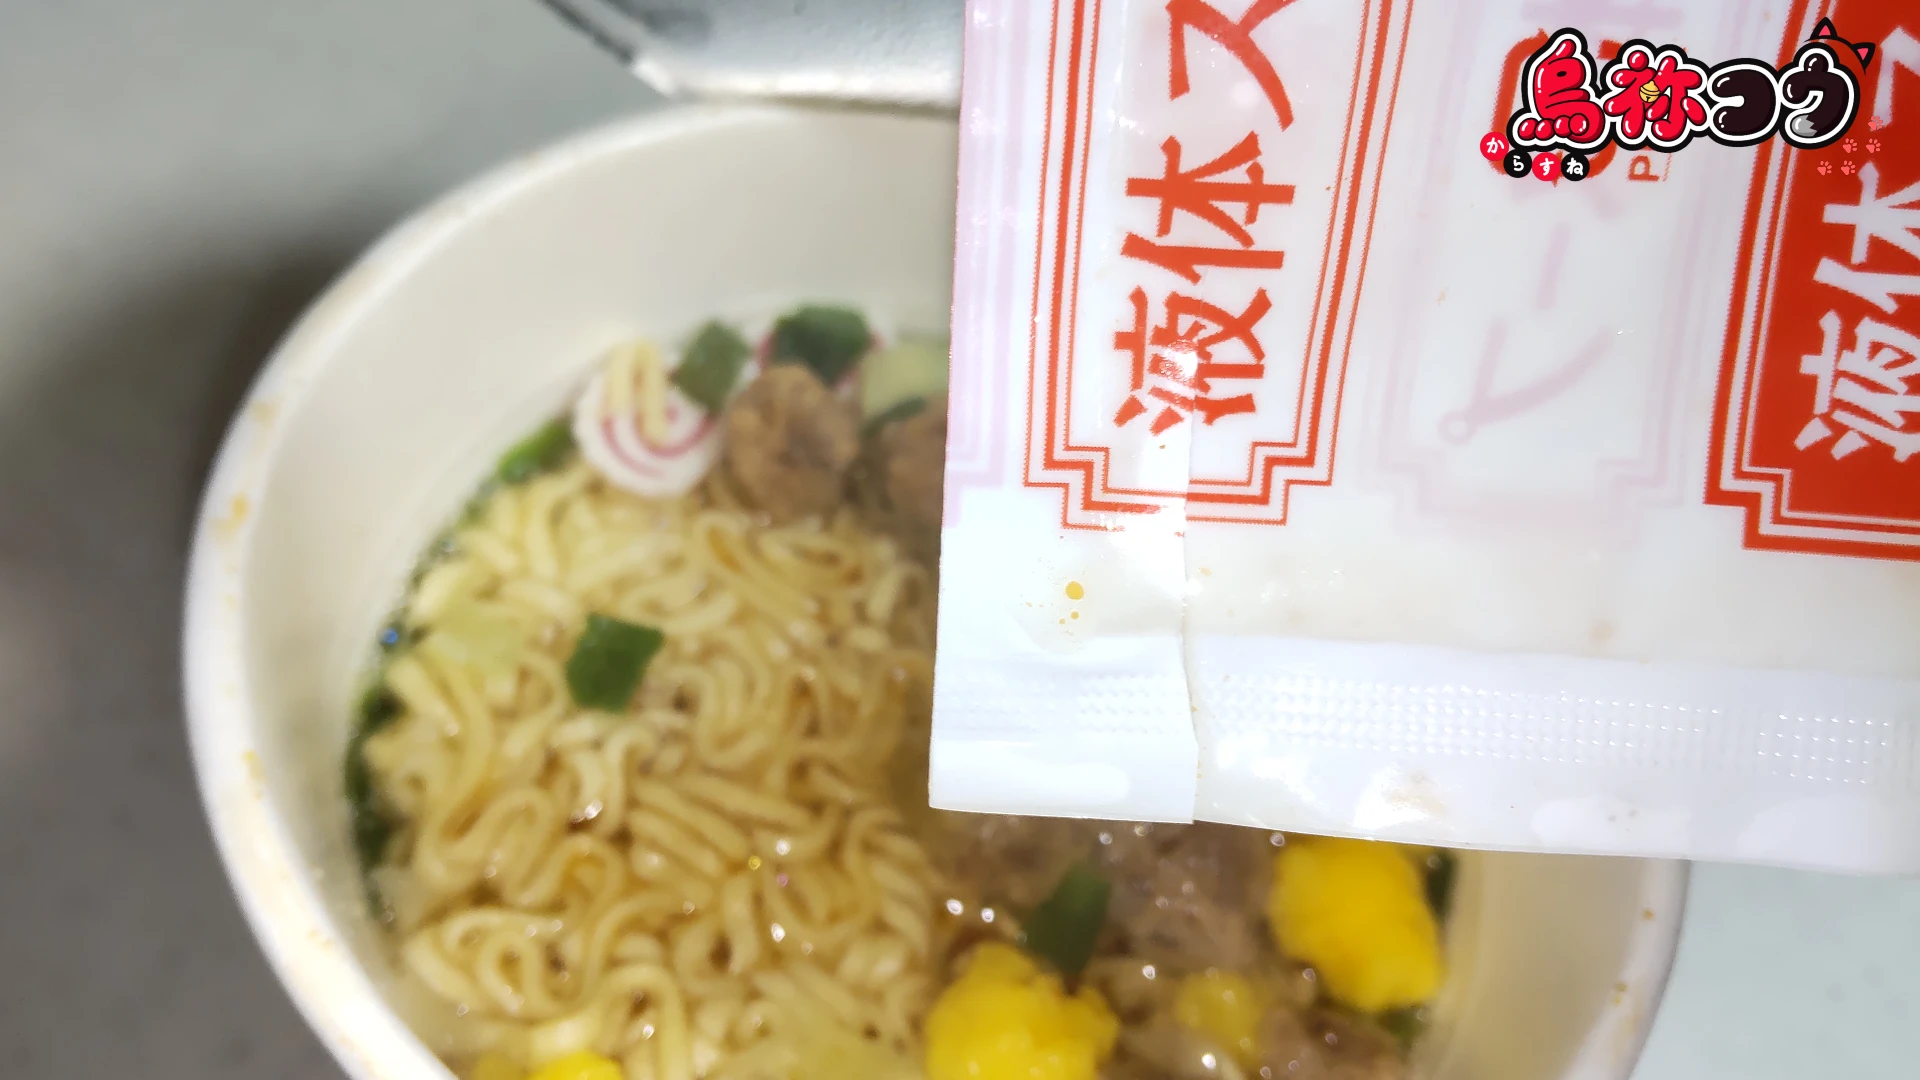 大黒食品の AKAGI 中華そば 縦型カップに液体スープを入れているところです